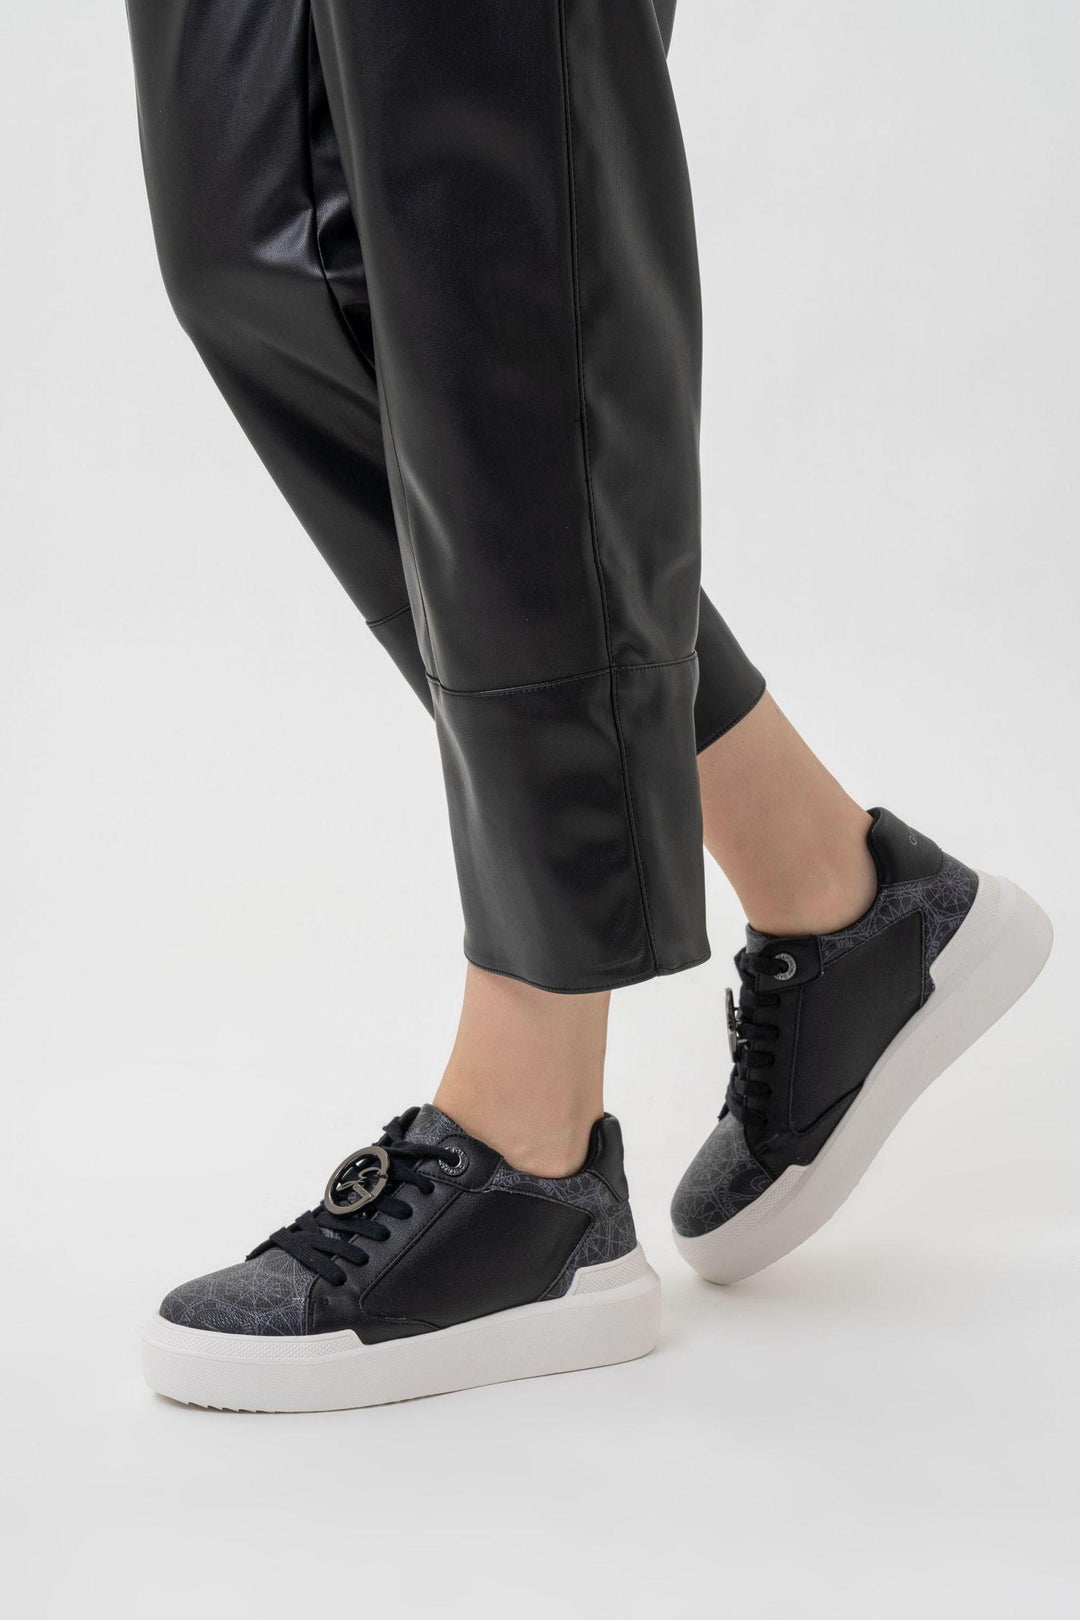 Sneaker Leon in similpelle stampa Teodosia colore nero